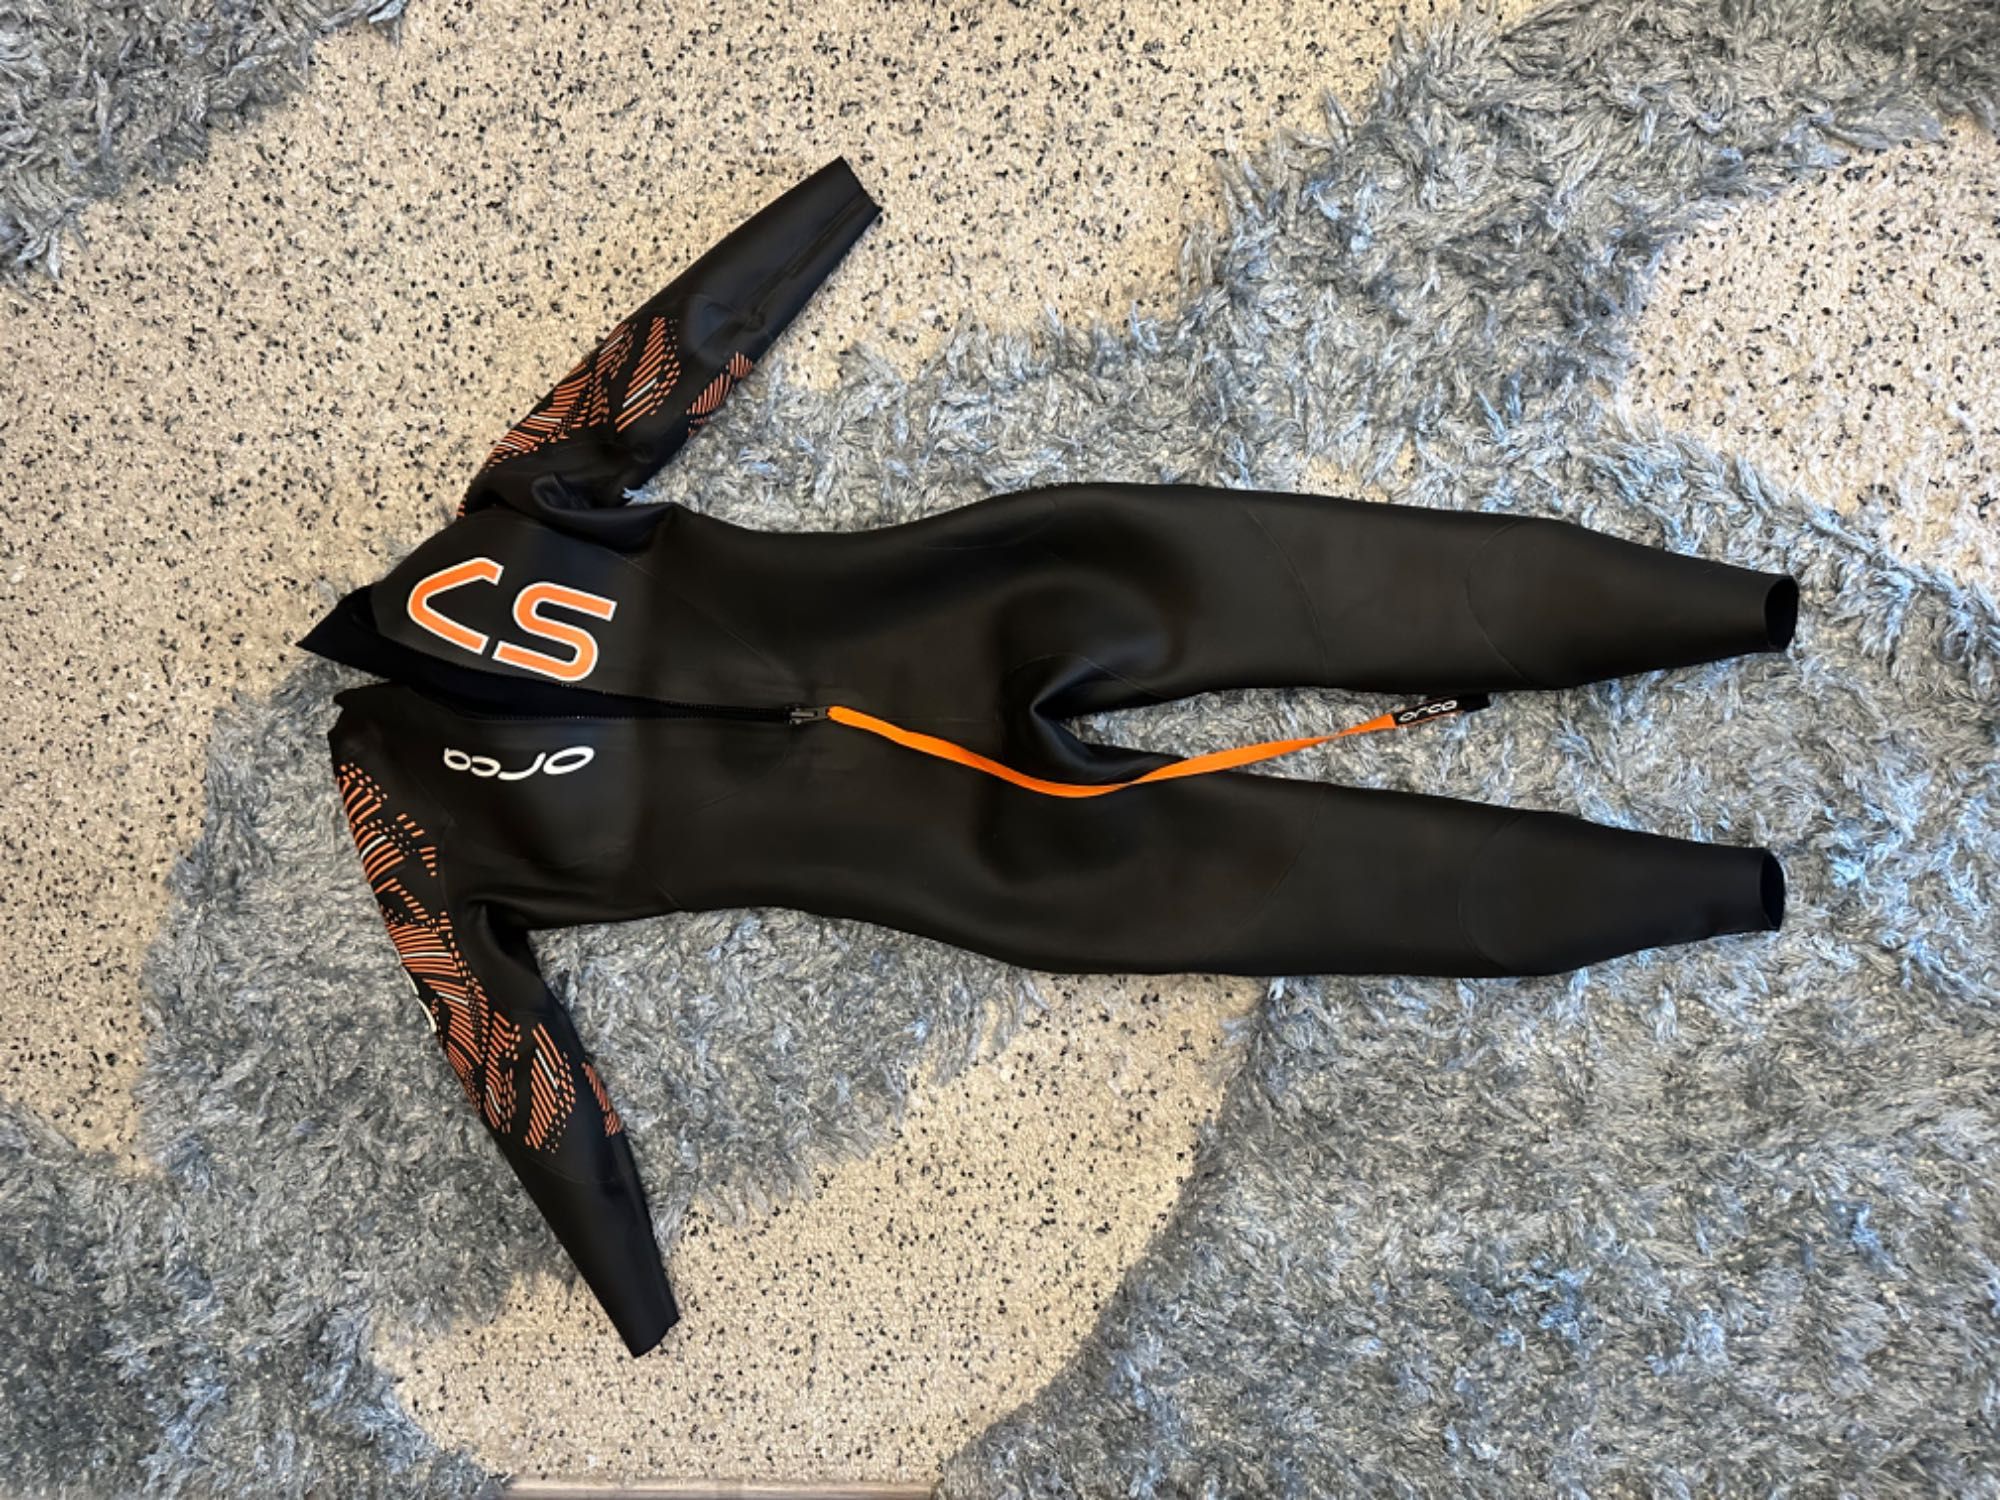 Costum de înot din neopren Orca S7, mărime Orca 11 (2XL-3XL)